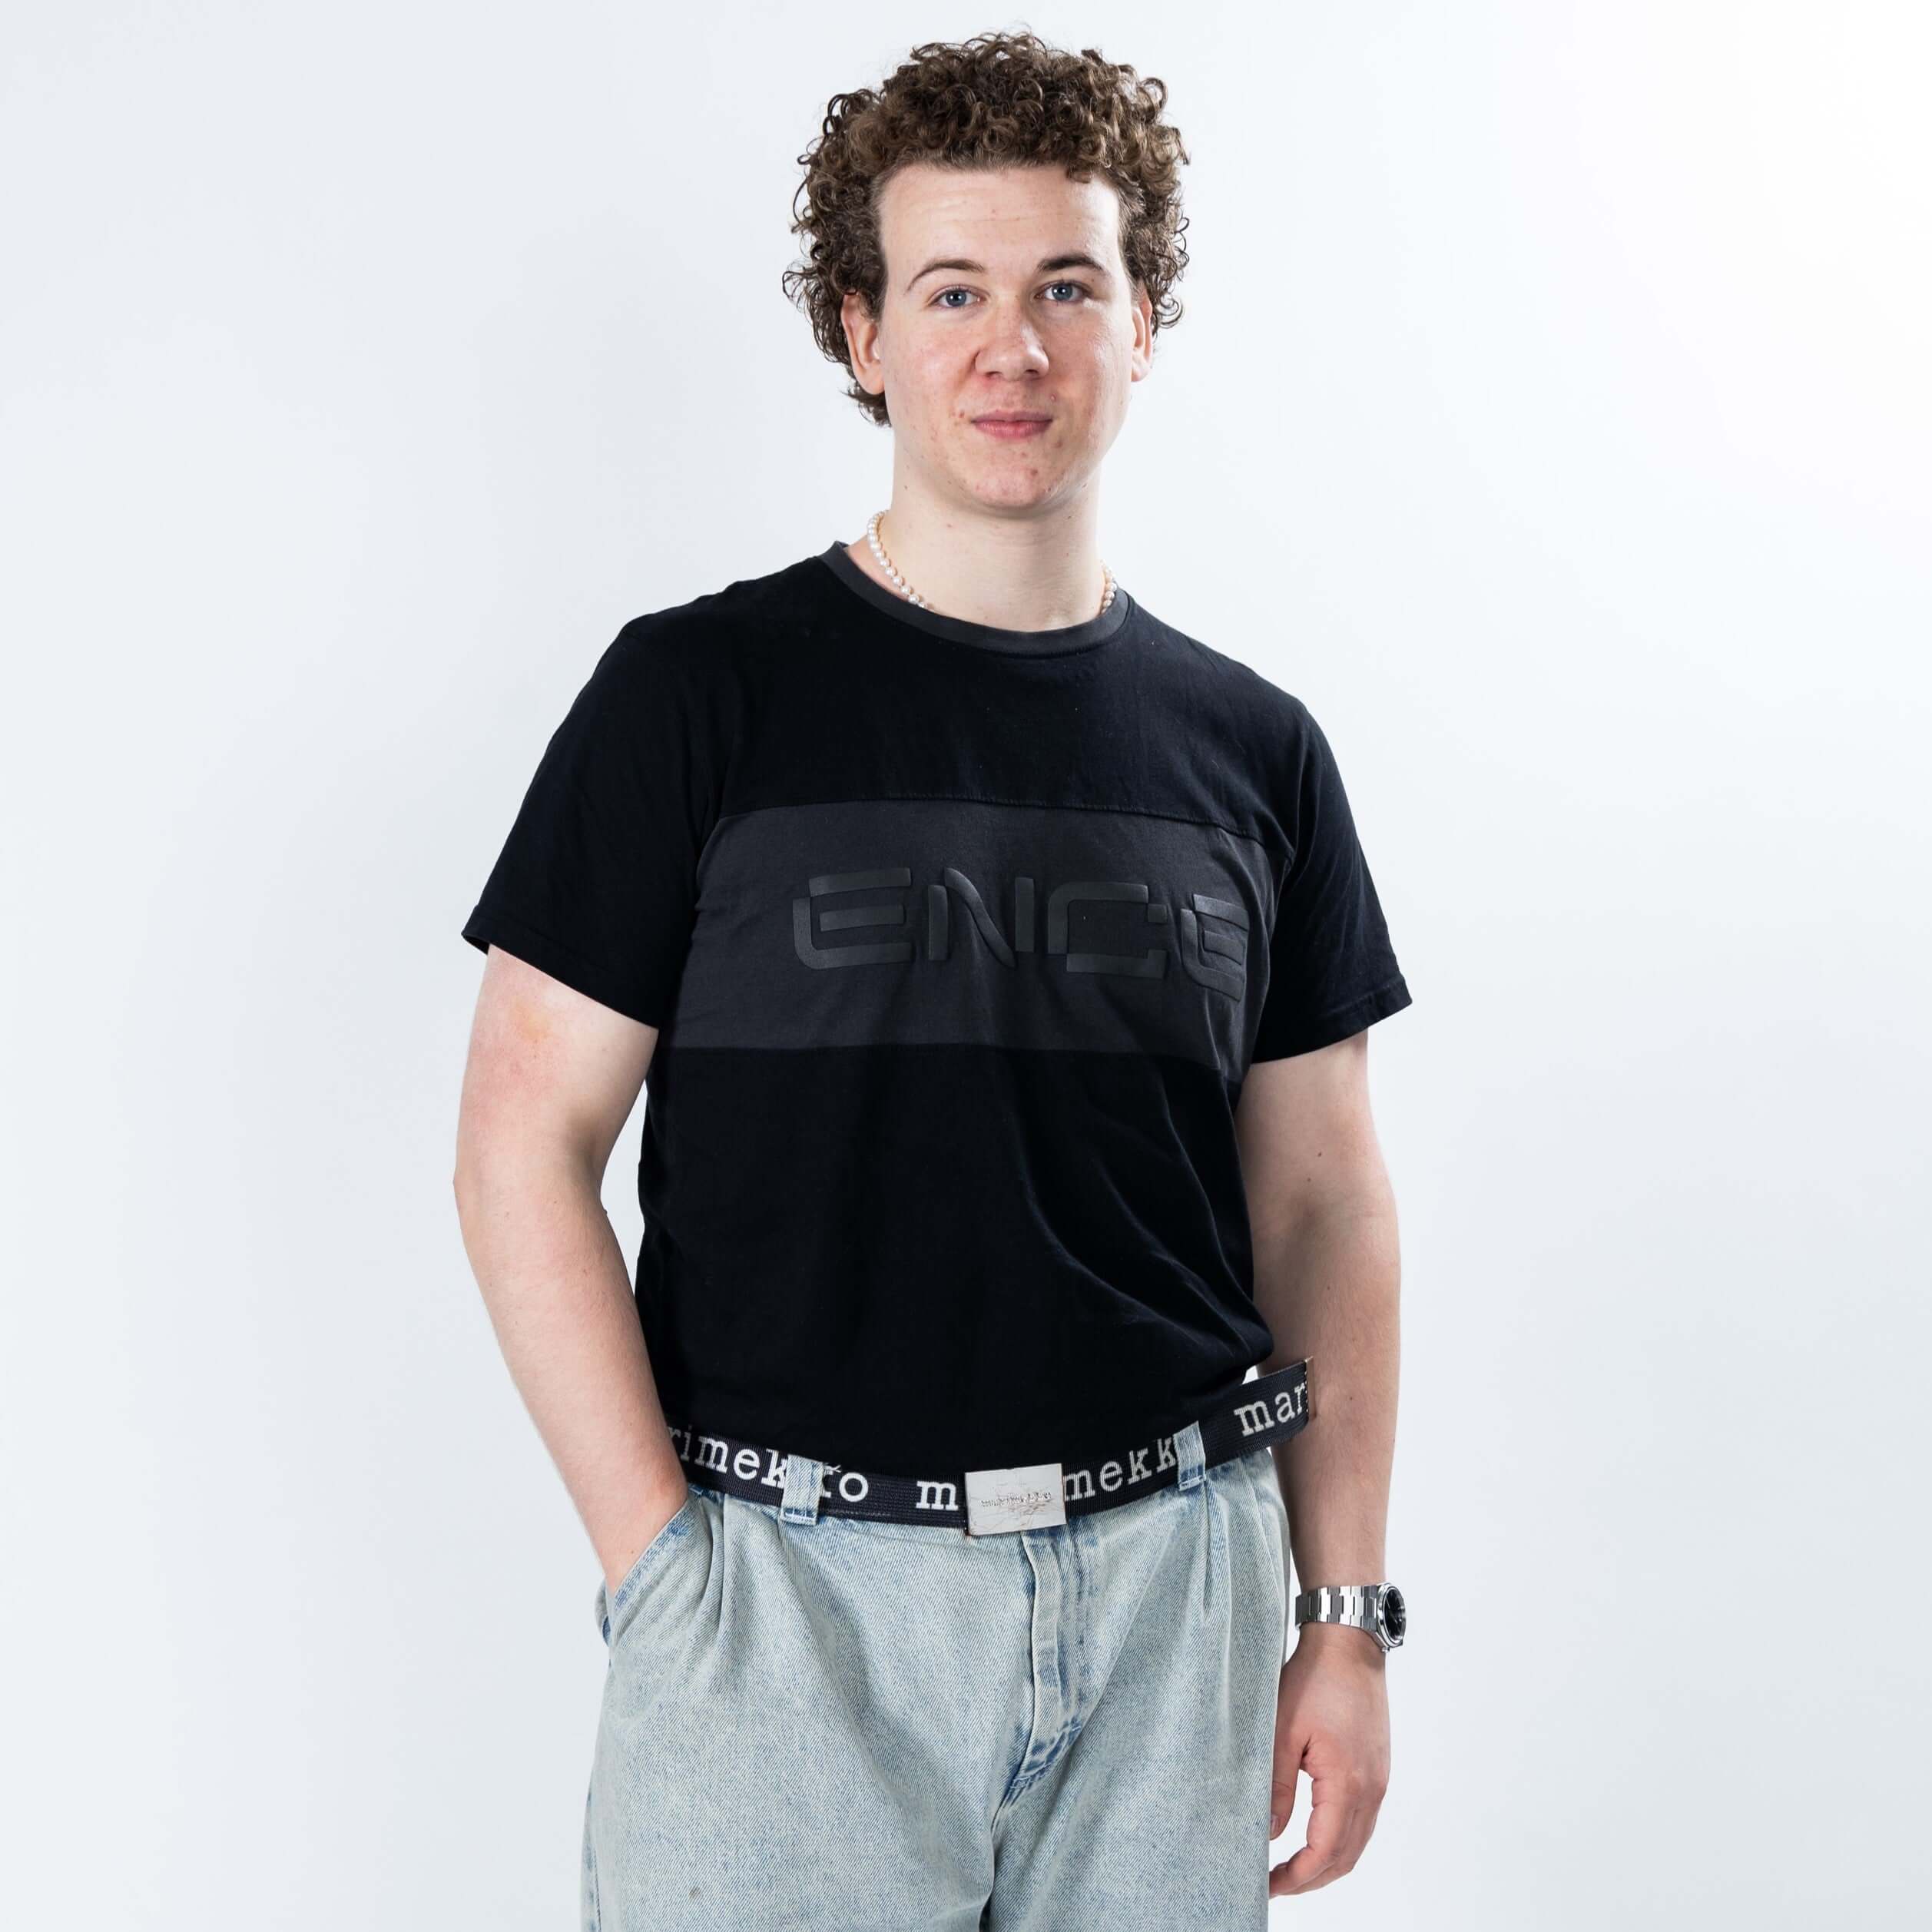 ENCE Block T-Shirt Black | ENCE Shop